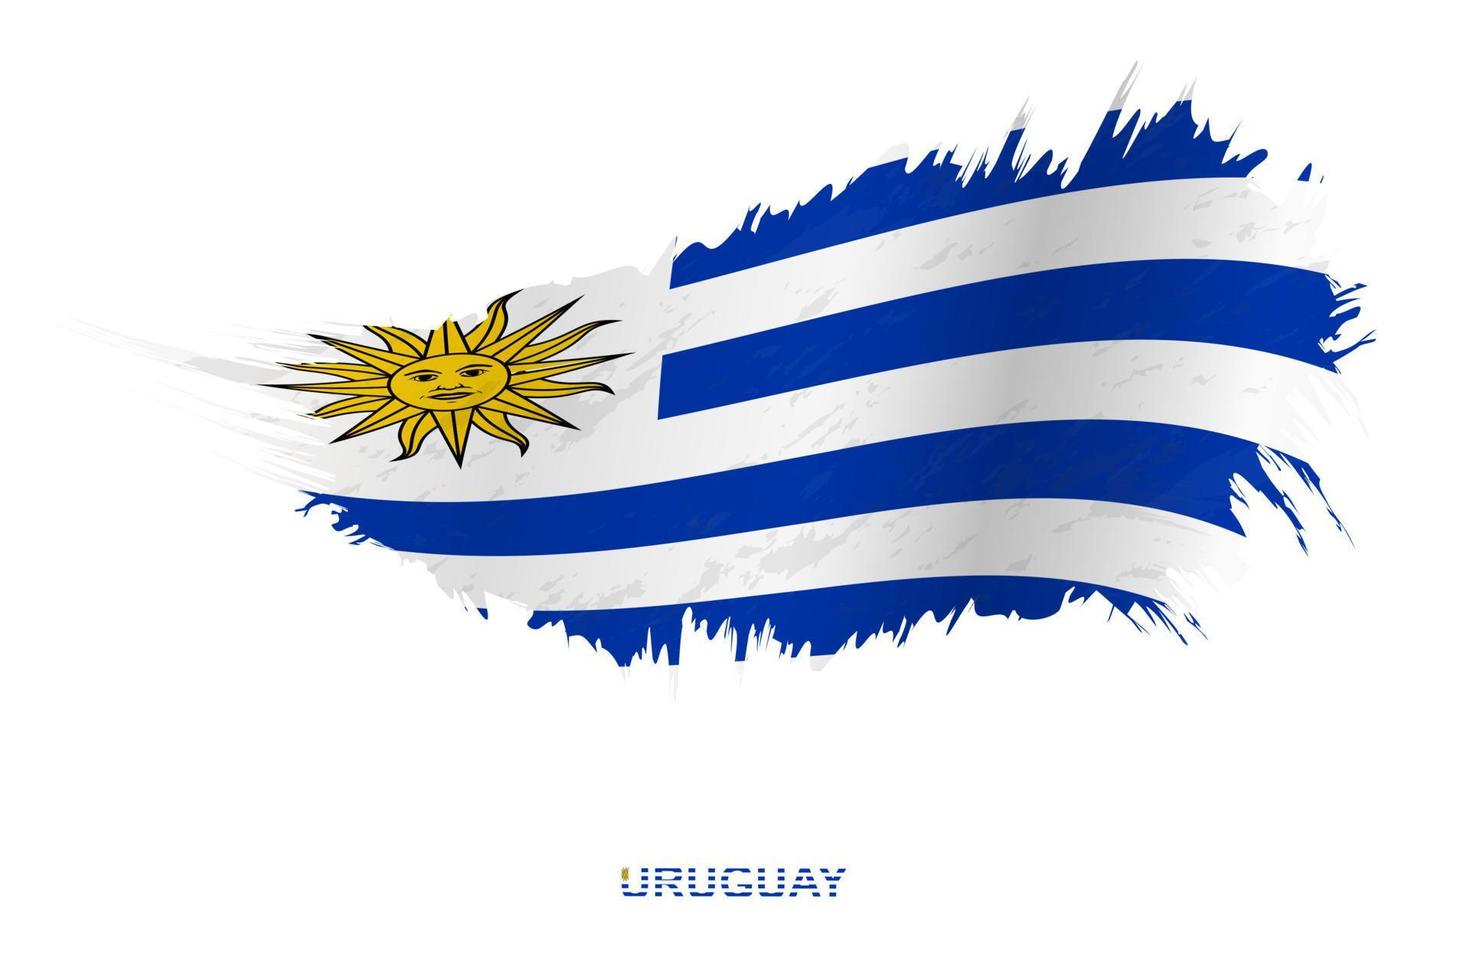 bandeira do uruguai em estilo grunge com efeito acenando. vetor